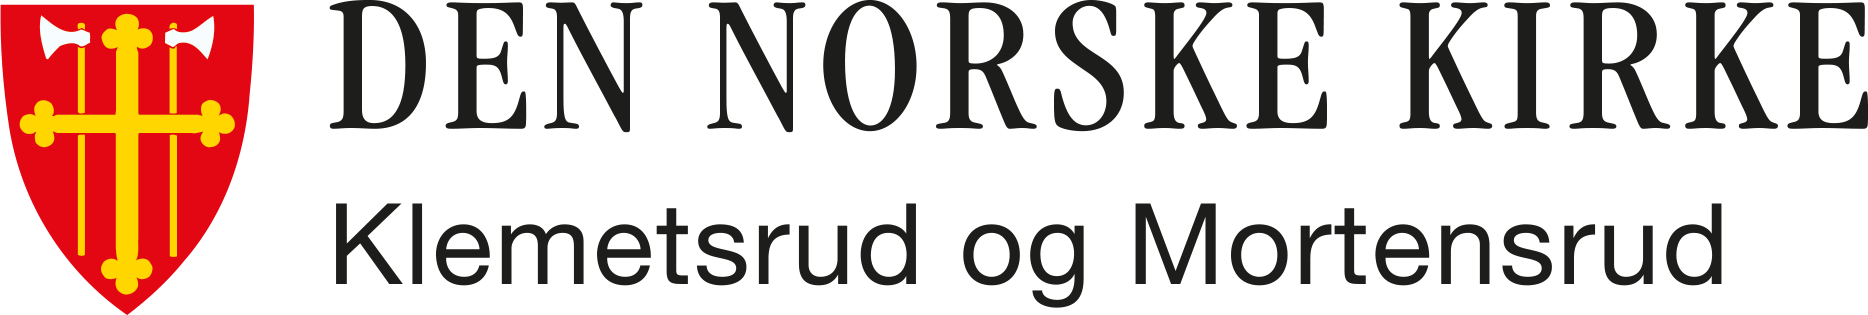 Klemetsrud og Mortensrud menighet logo